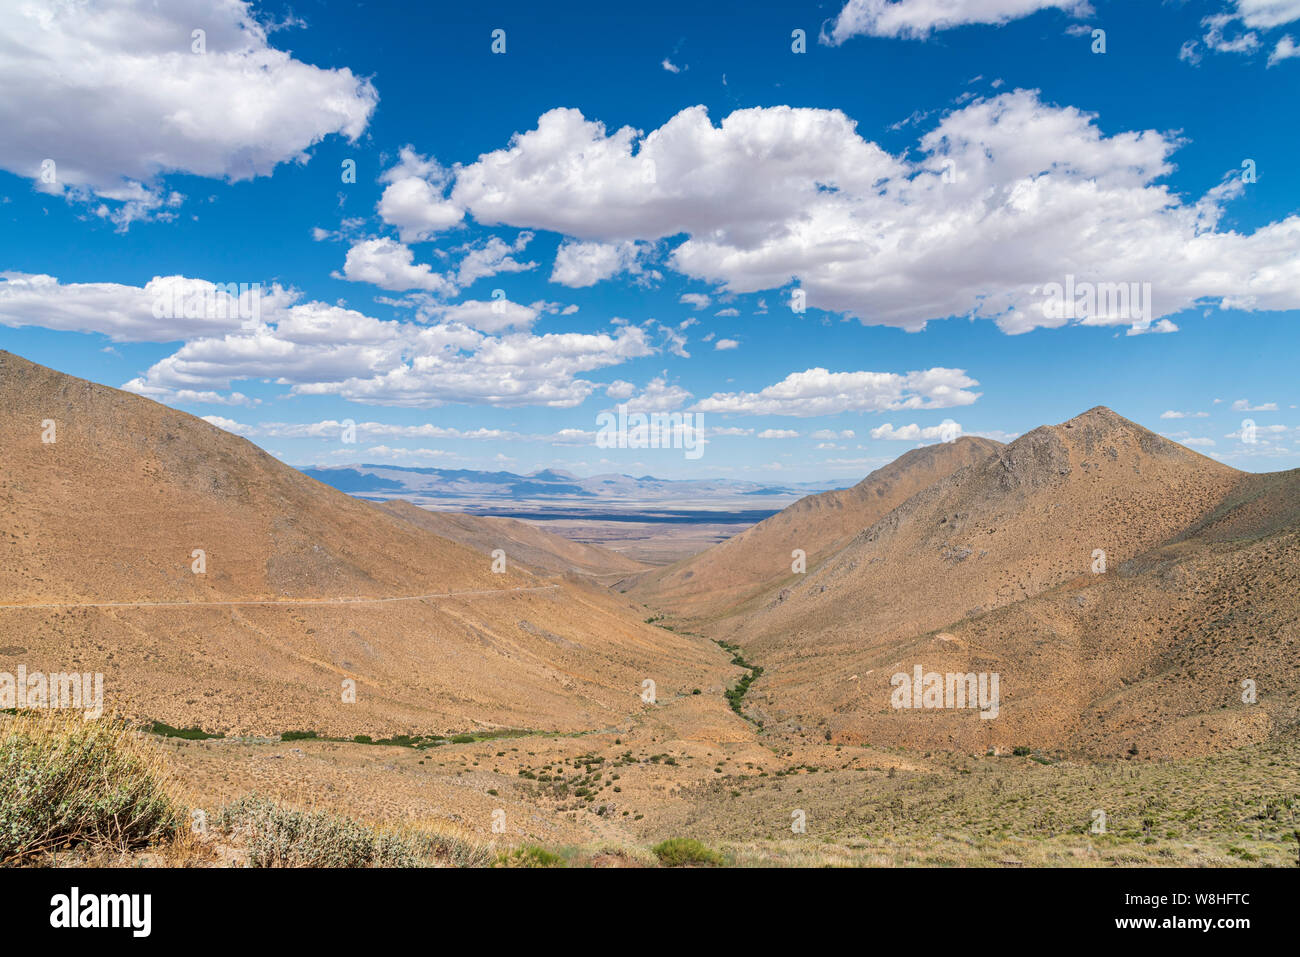 Montagnes arides brown avec peu de végétation sous ciel bleu avec des nuages blancs moelleux. Desert canyon avec vallée au-delà. Banque D'Images